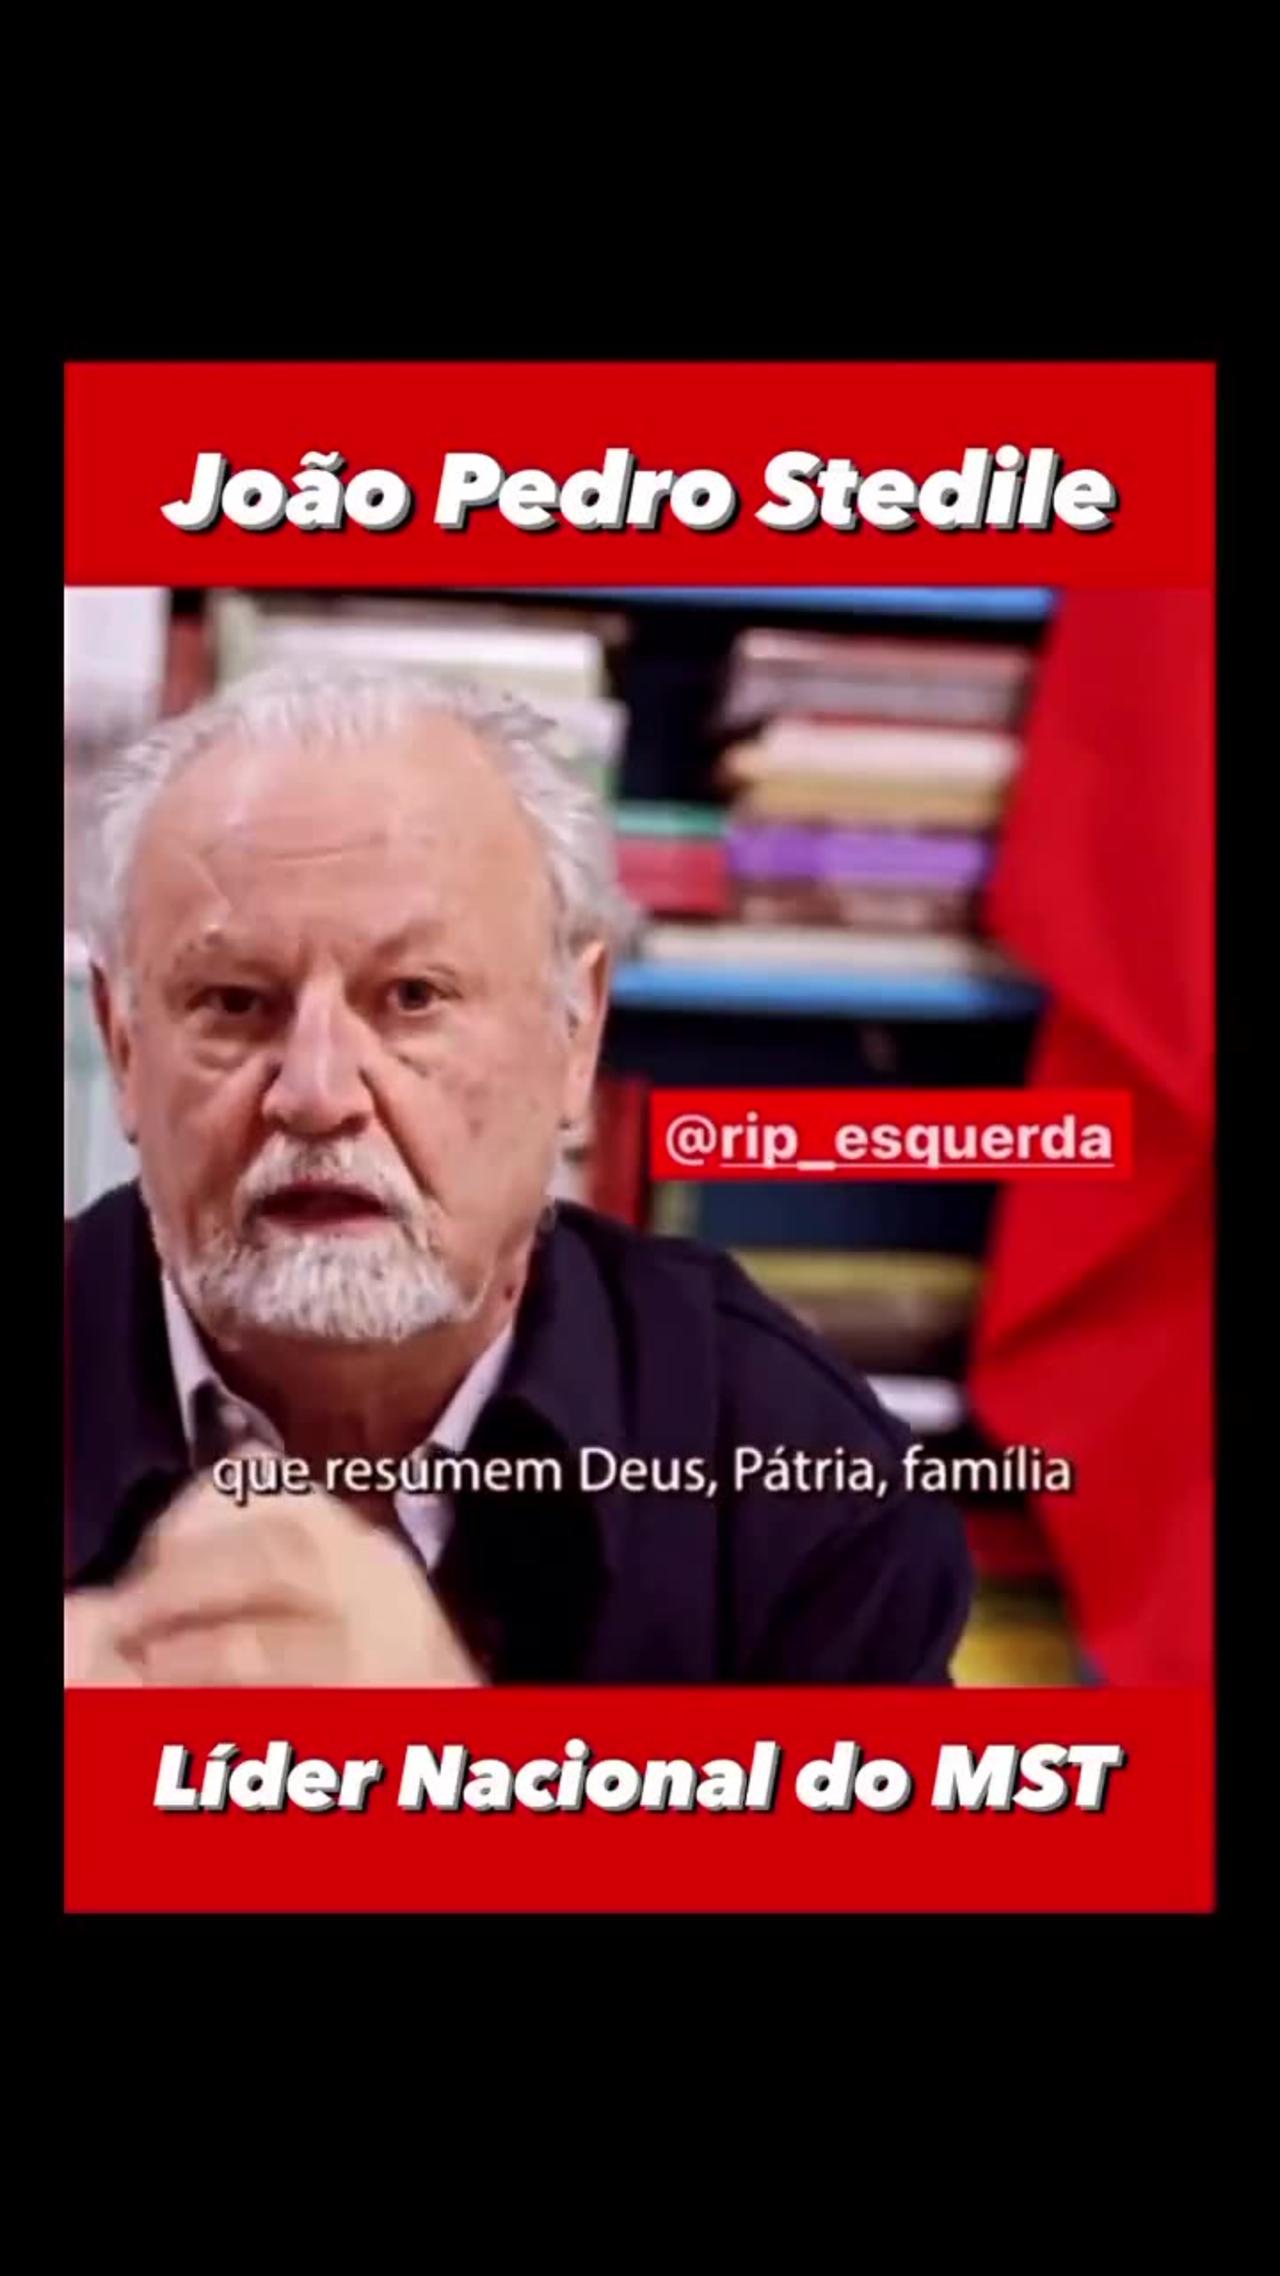 João P. Stedile,  líder ditador do  MST critica defensores família, religião, liberdade e pátria.